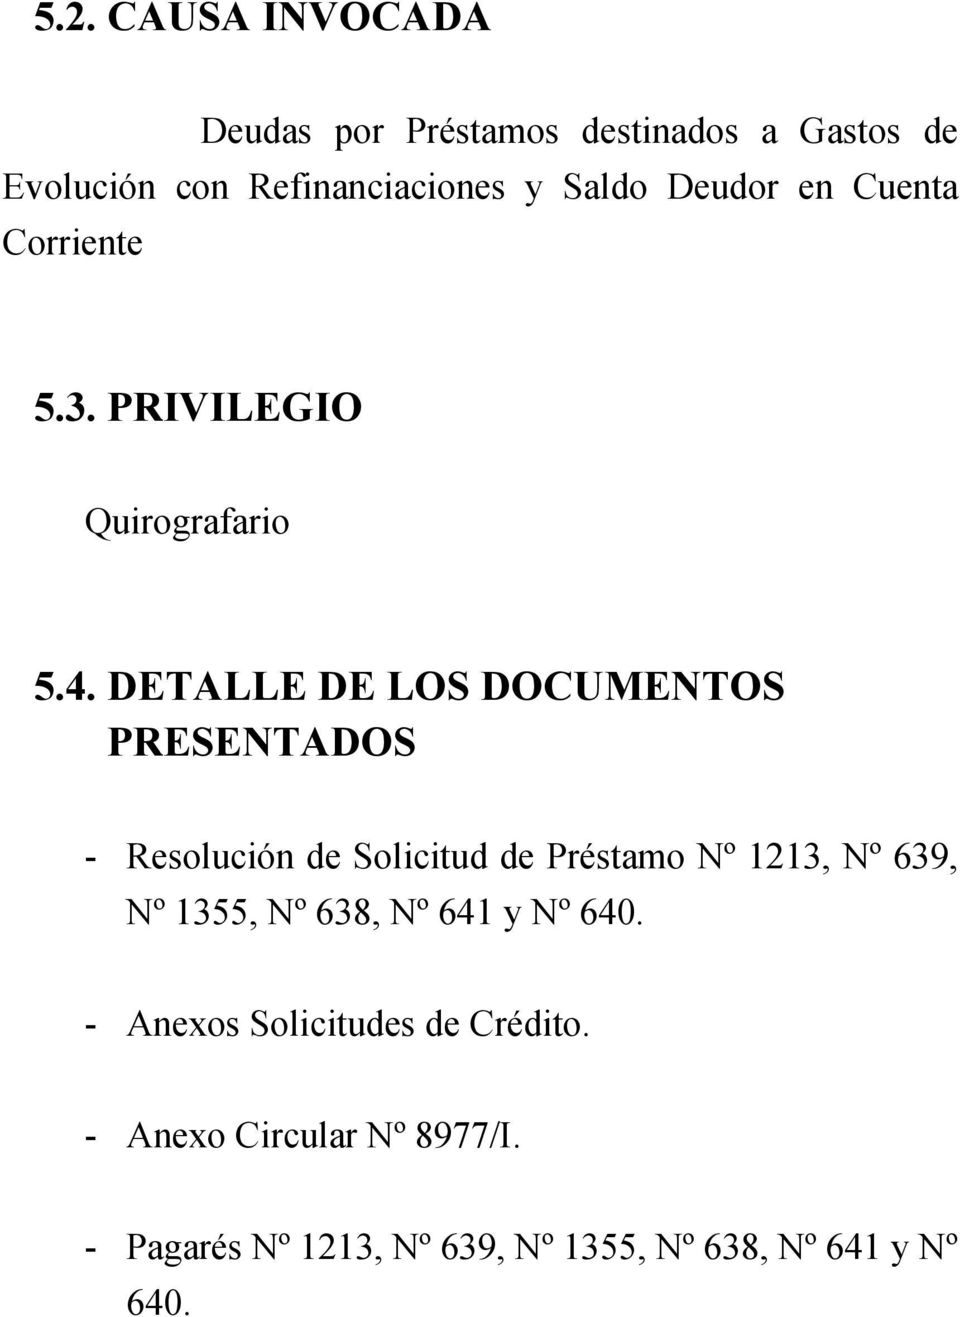 DETALLE DE LOS DOCUMENTOS PRESENTADOS - Resolución de Solicitud de Préstamo Nº 1213, Nº 639, Nº 1355,